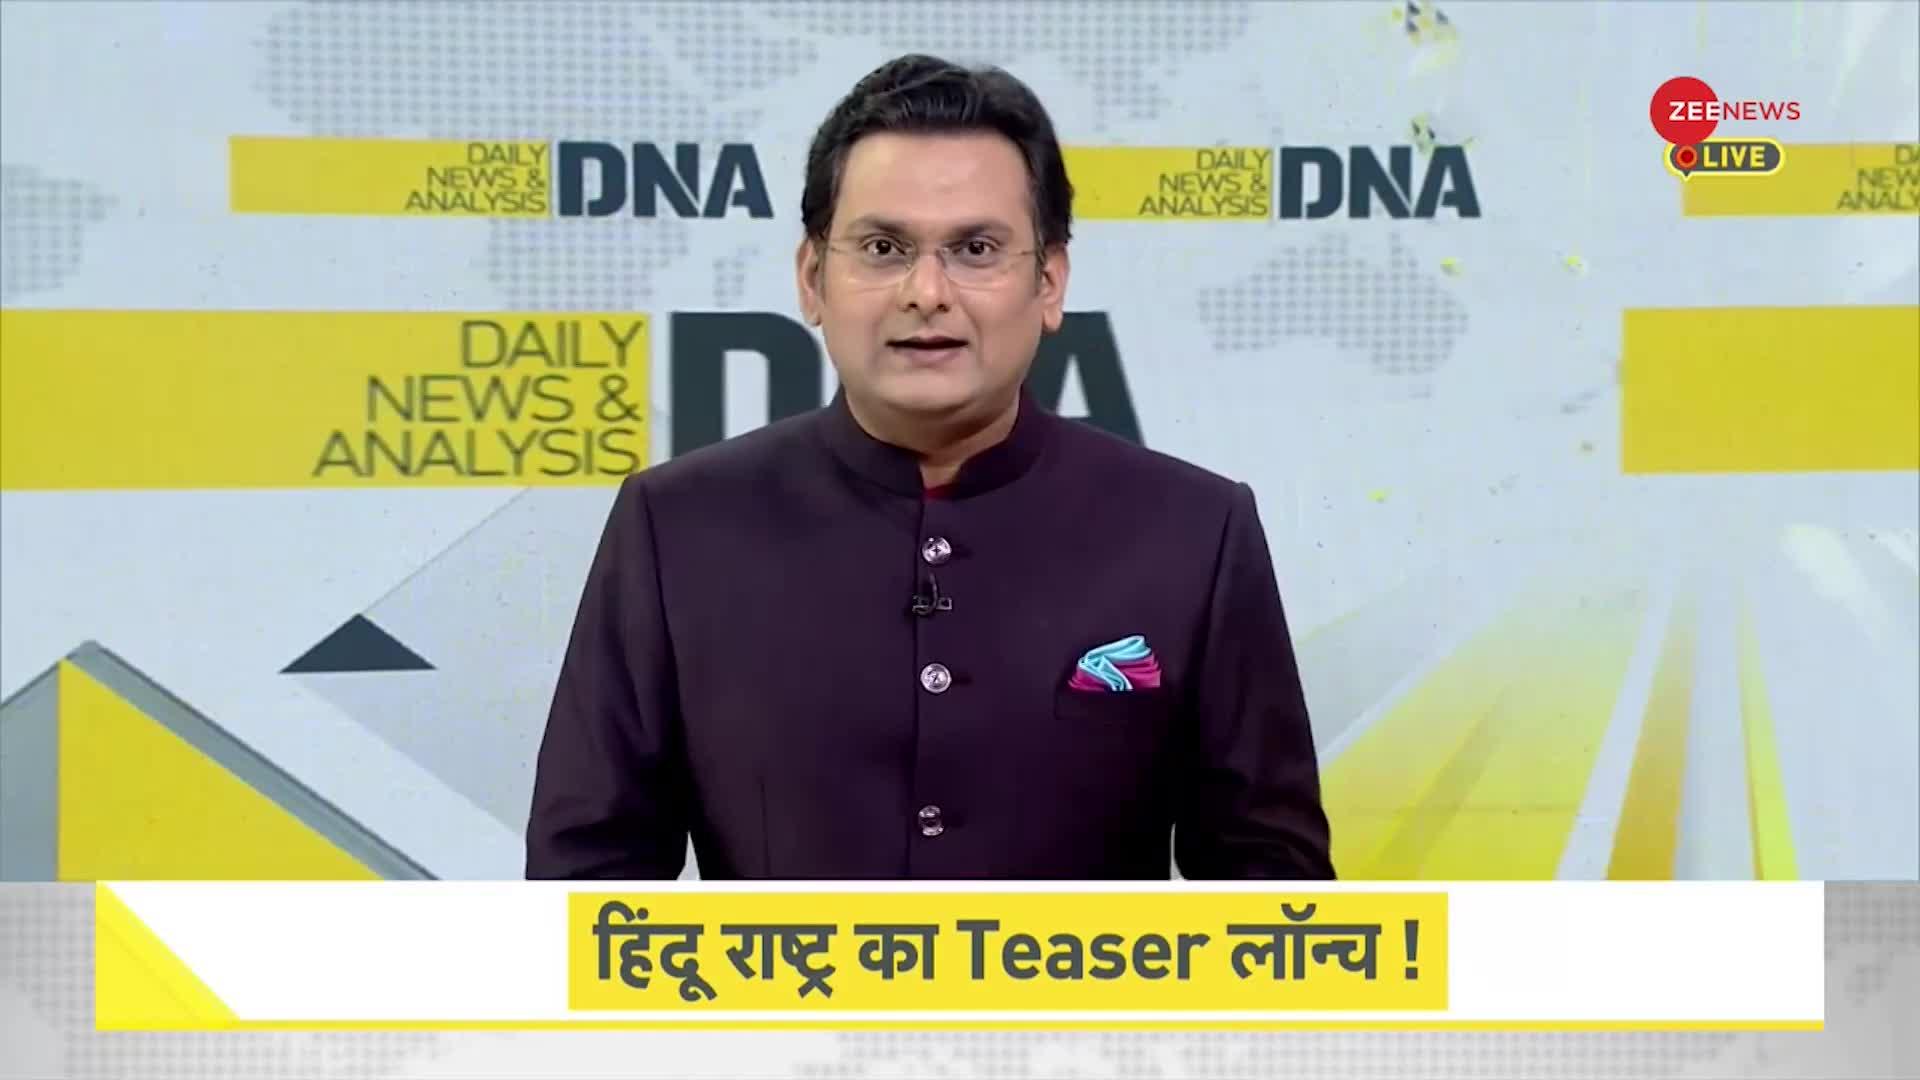 DNA: नवरात्रों में होगा हिंदू राष्ट्र का Teaser लॉन्च !